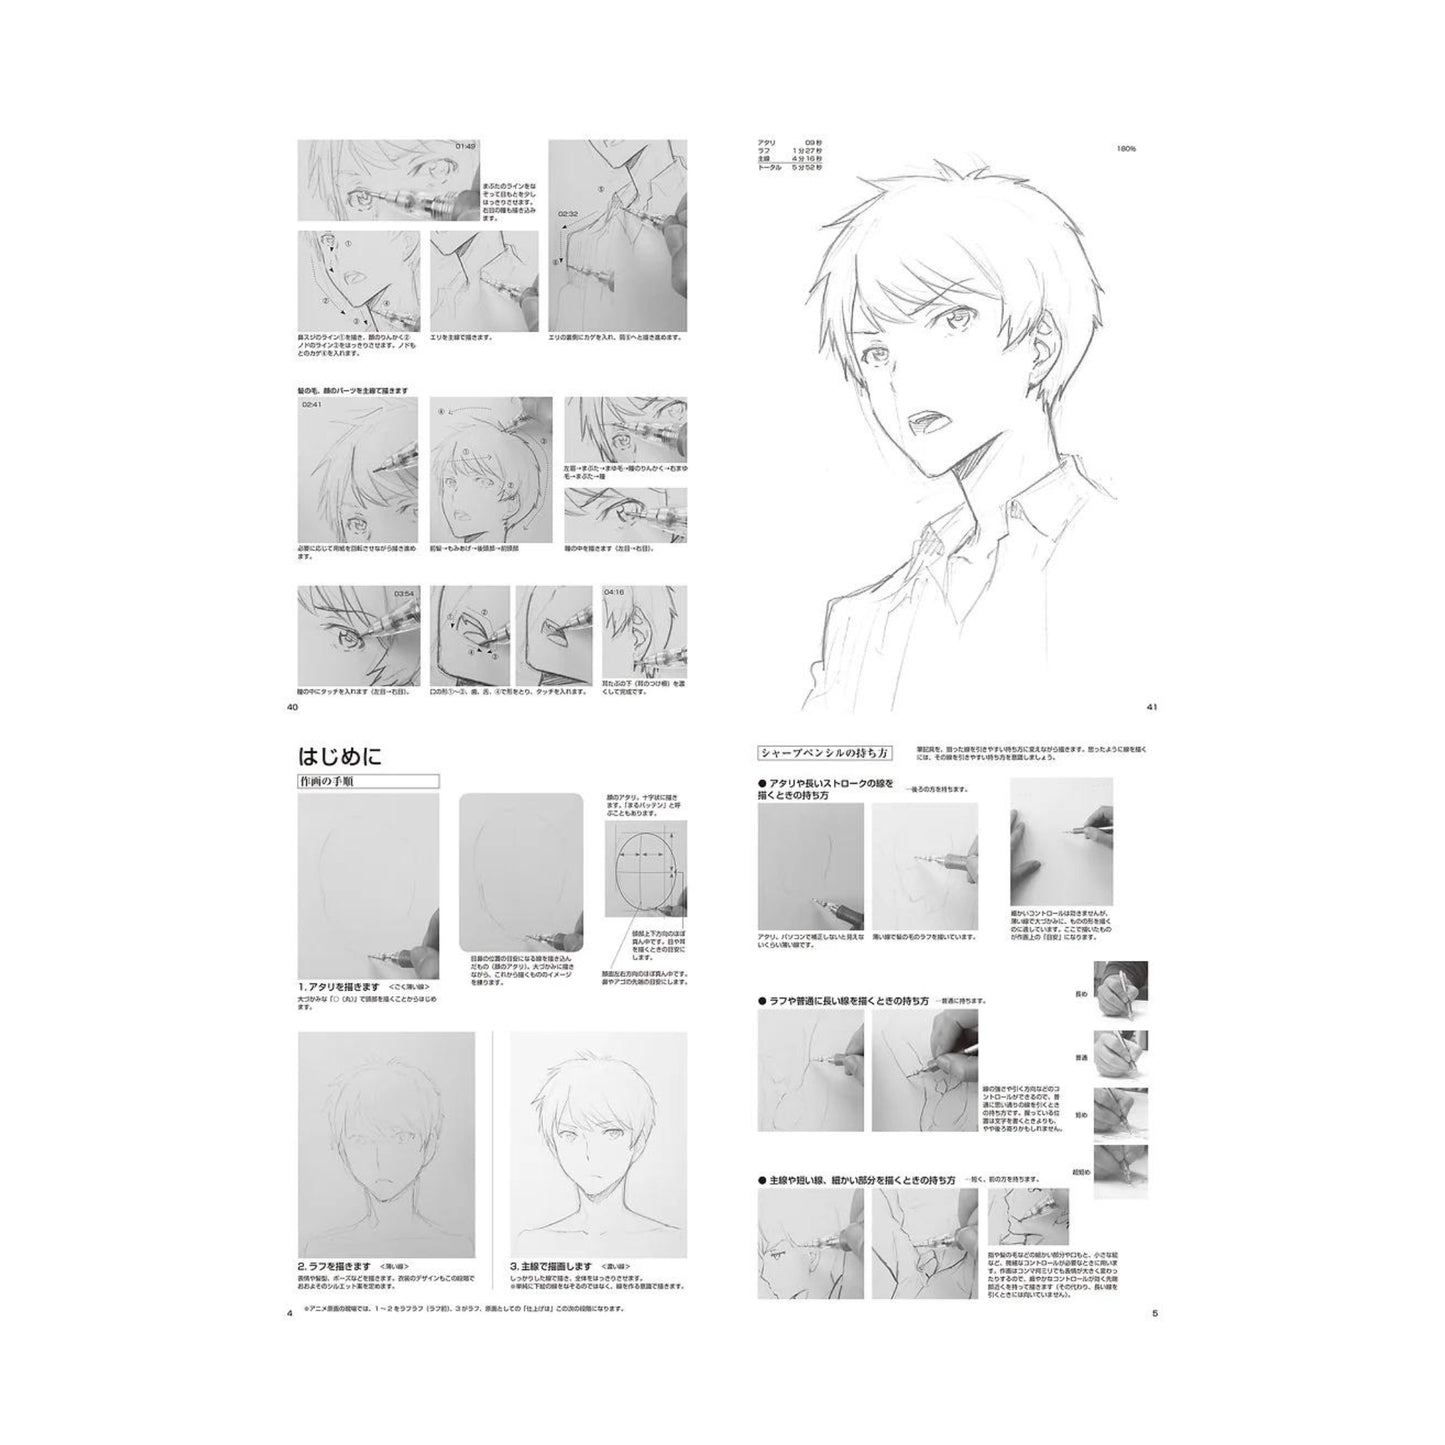 How to draw - jap. Zeichenbuch - männliche Charas